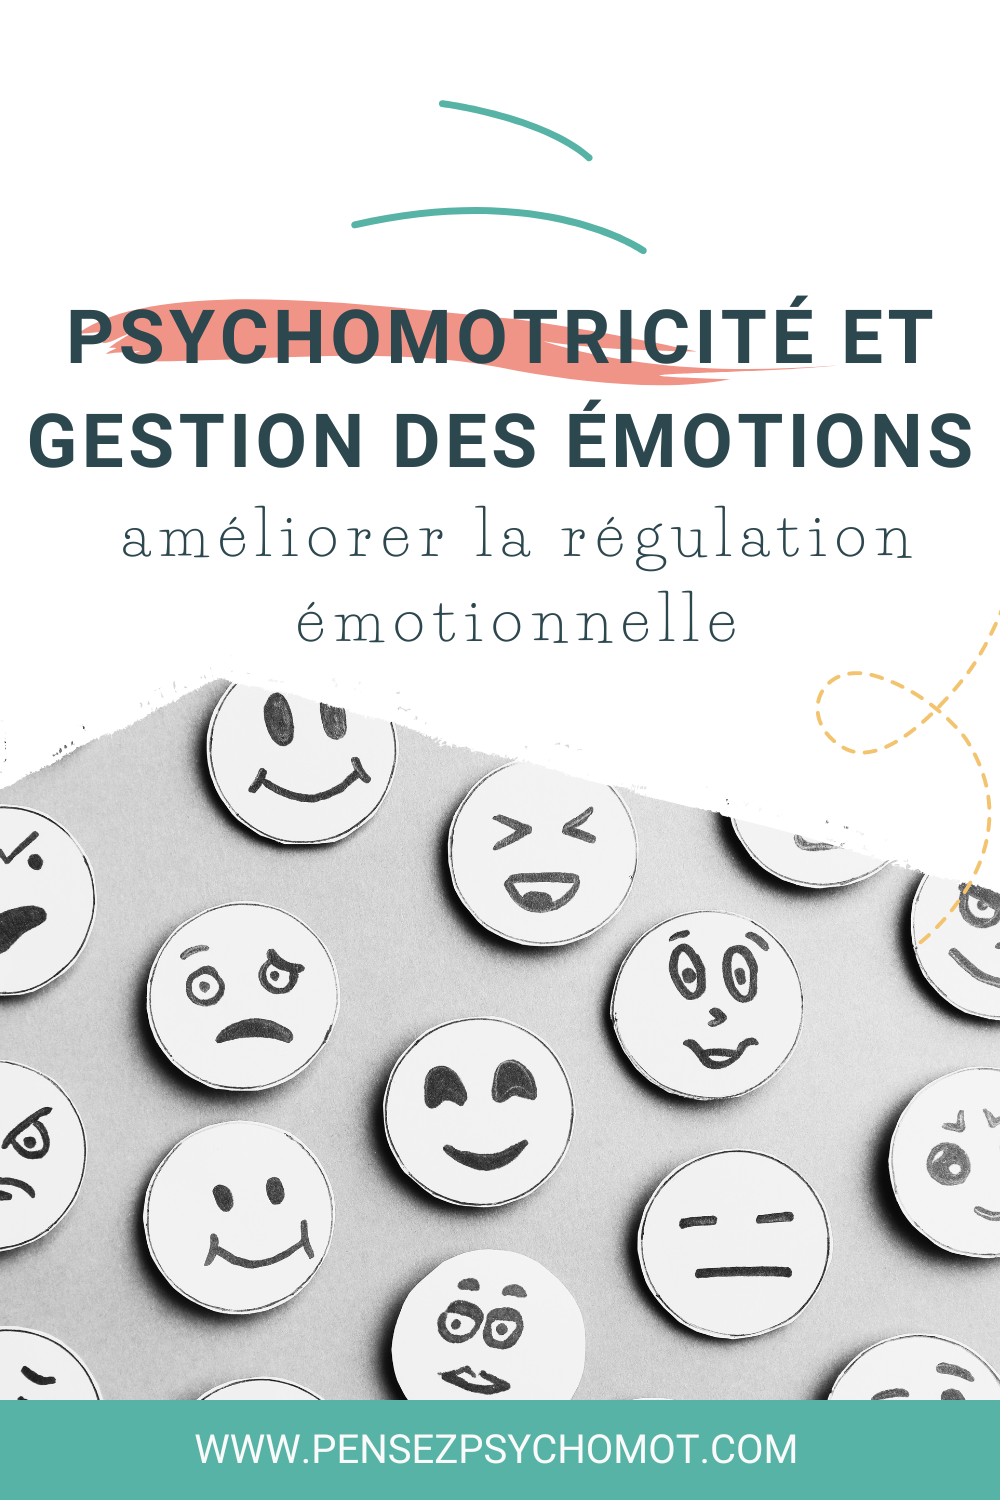 Psychomotricité et émotions : Les 5 meilleures techniques de régulation à découvrir